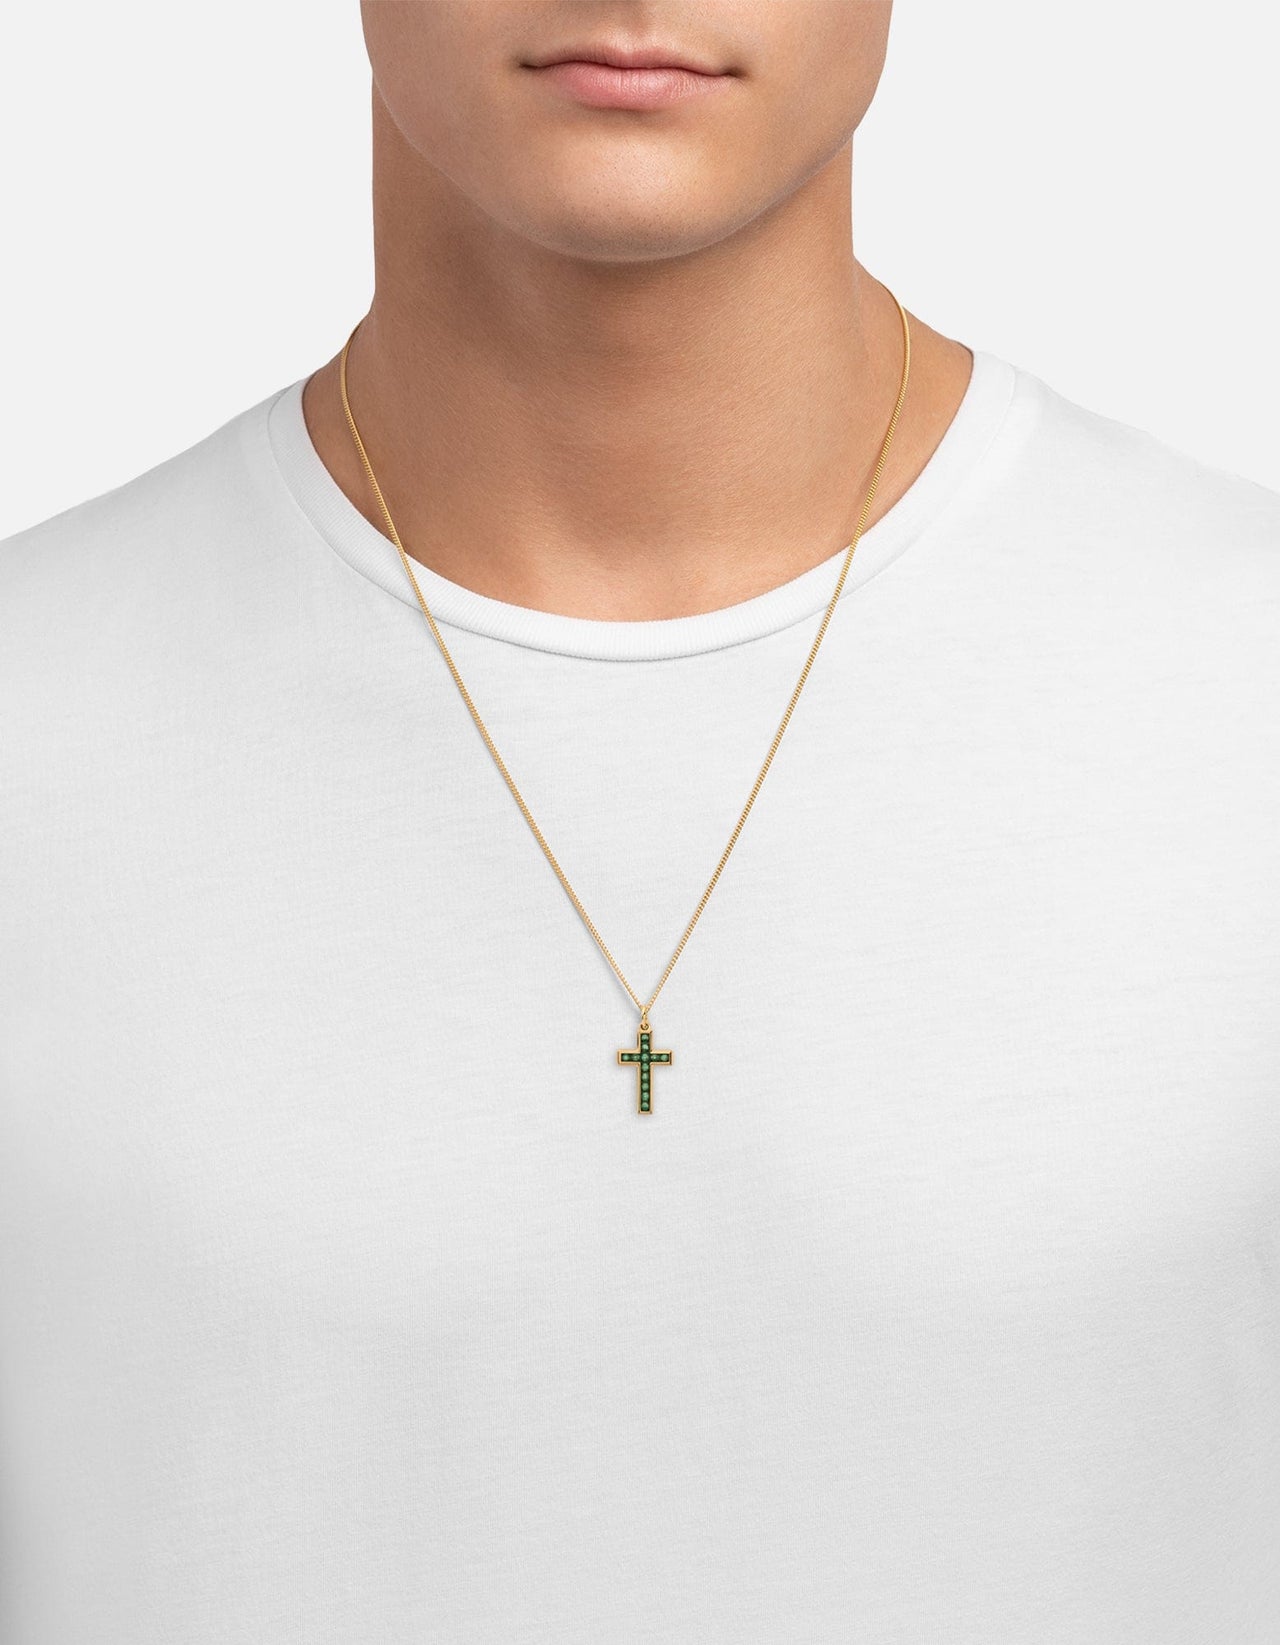 Unique Cross Necklaces for Women and Men | Kochut